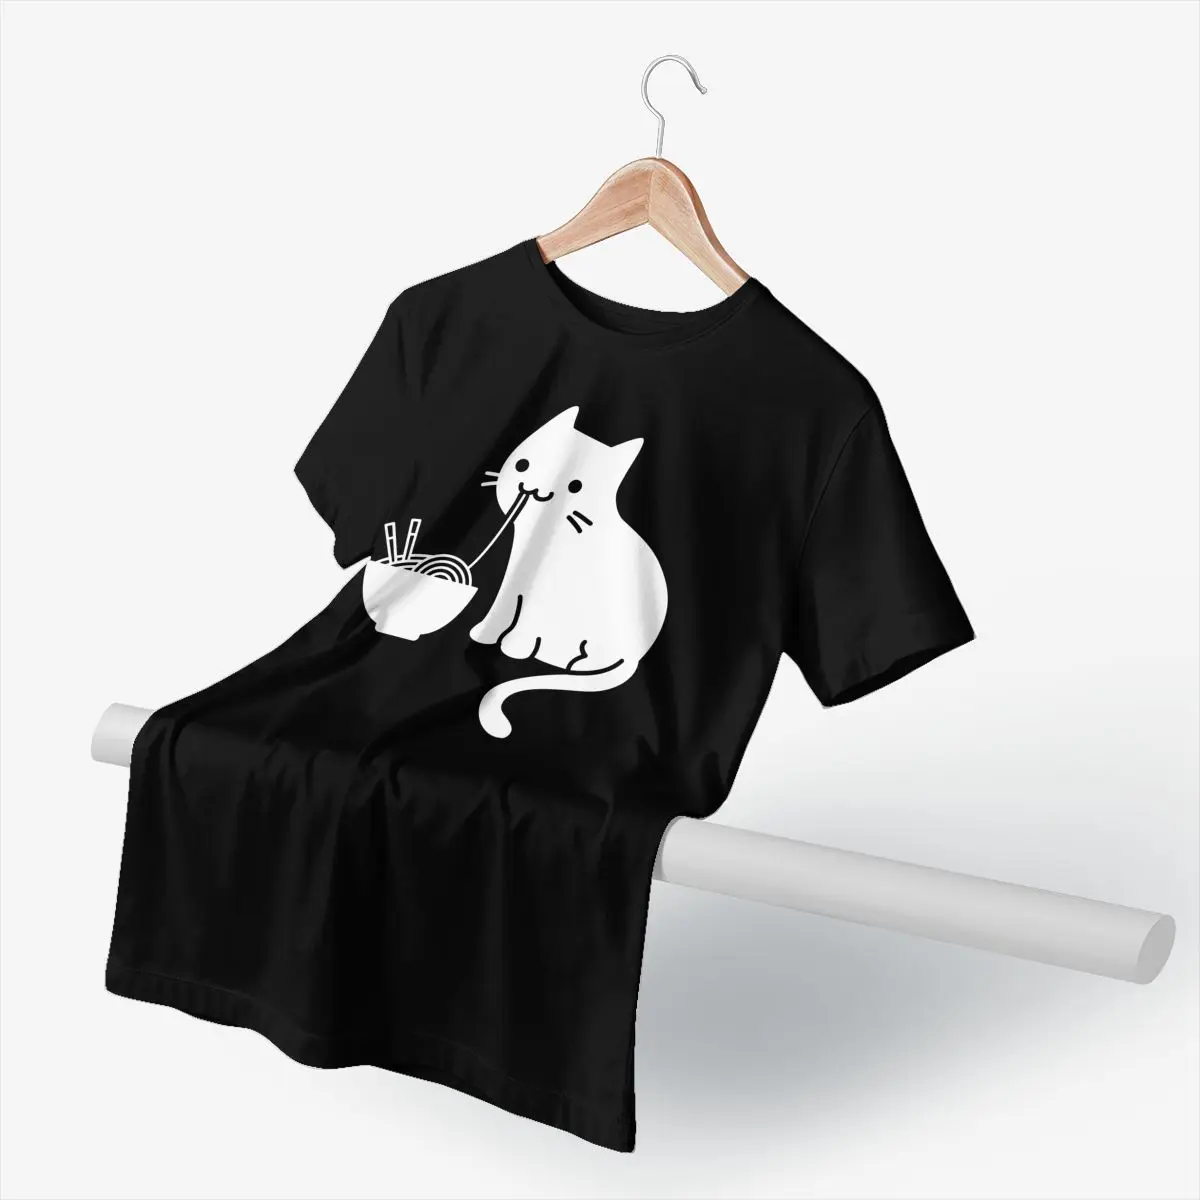 Japón Gato Camiseta Lindo Gato Comiendo Ramen T-Shirt Graphic Casual de la Camiseta de Algodón de la Diversión Masculina 3xl Camiseta 4